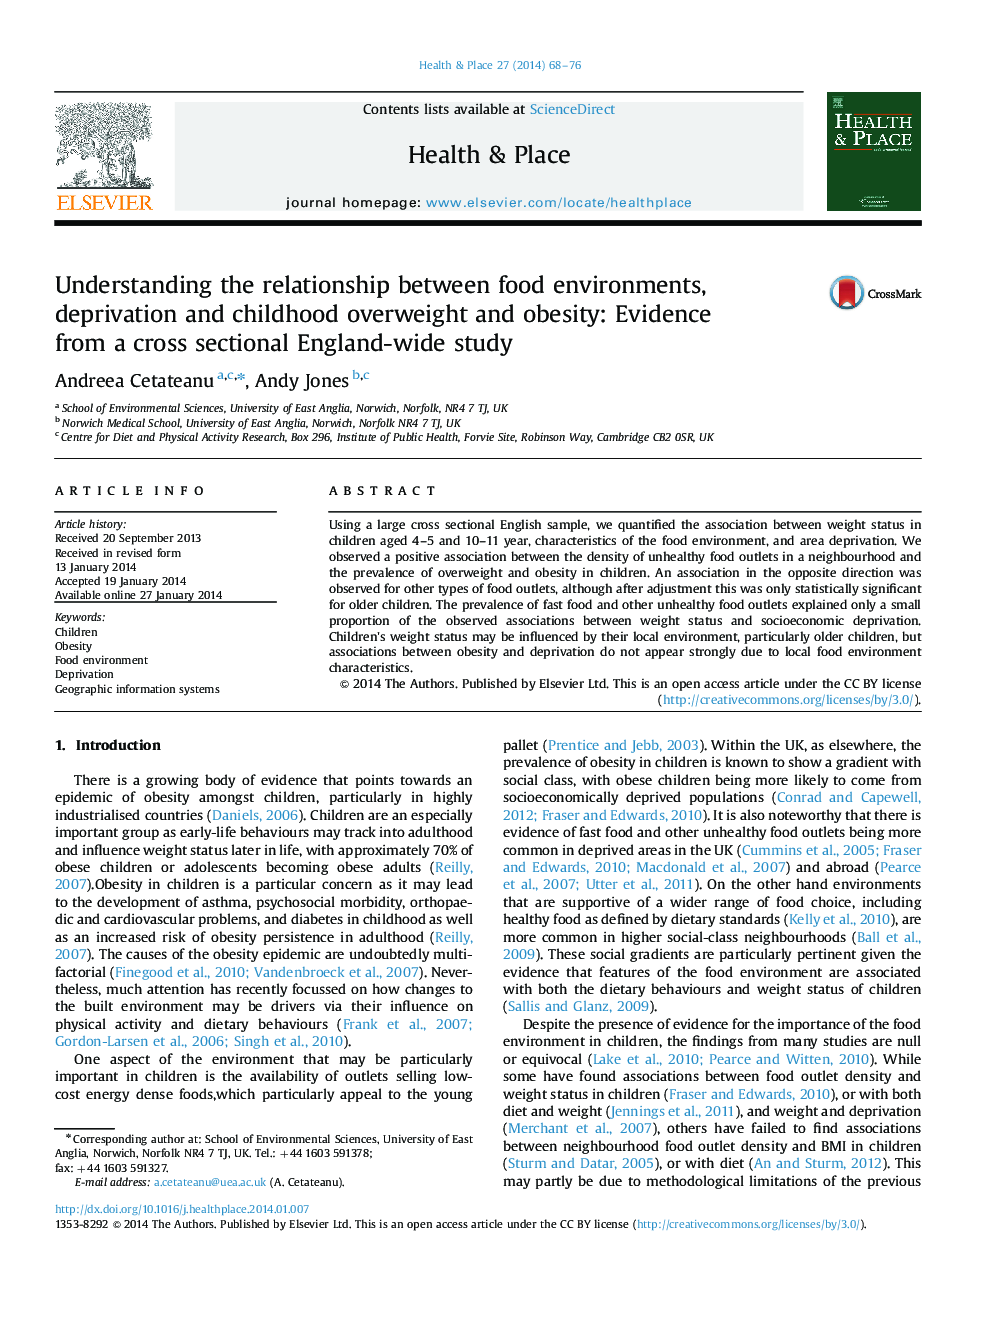 درک رابطه بین محیط غذا، محرومیت و اضافه وزن و چاقی در دوران کودکی: شواهد از یک مطالعه مقطعی در سراسر انگلستان 